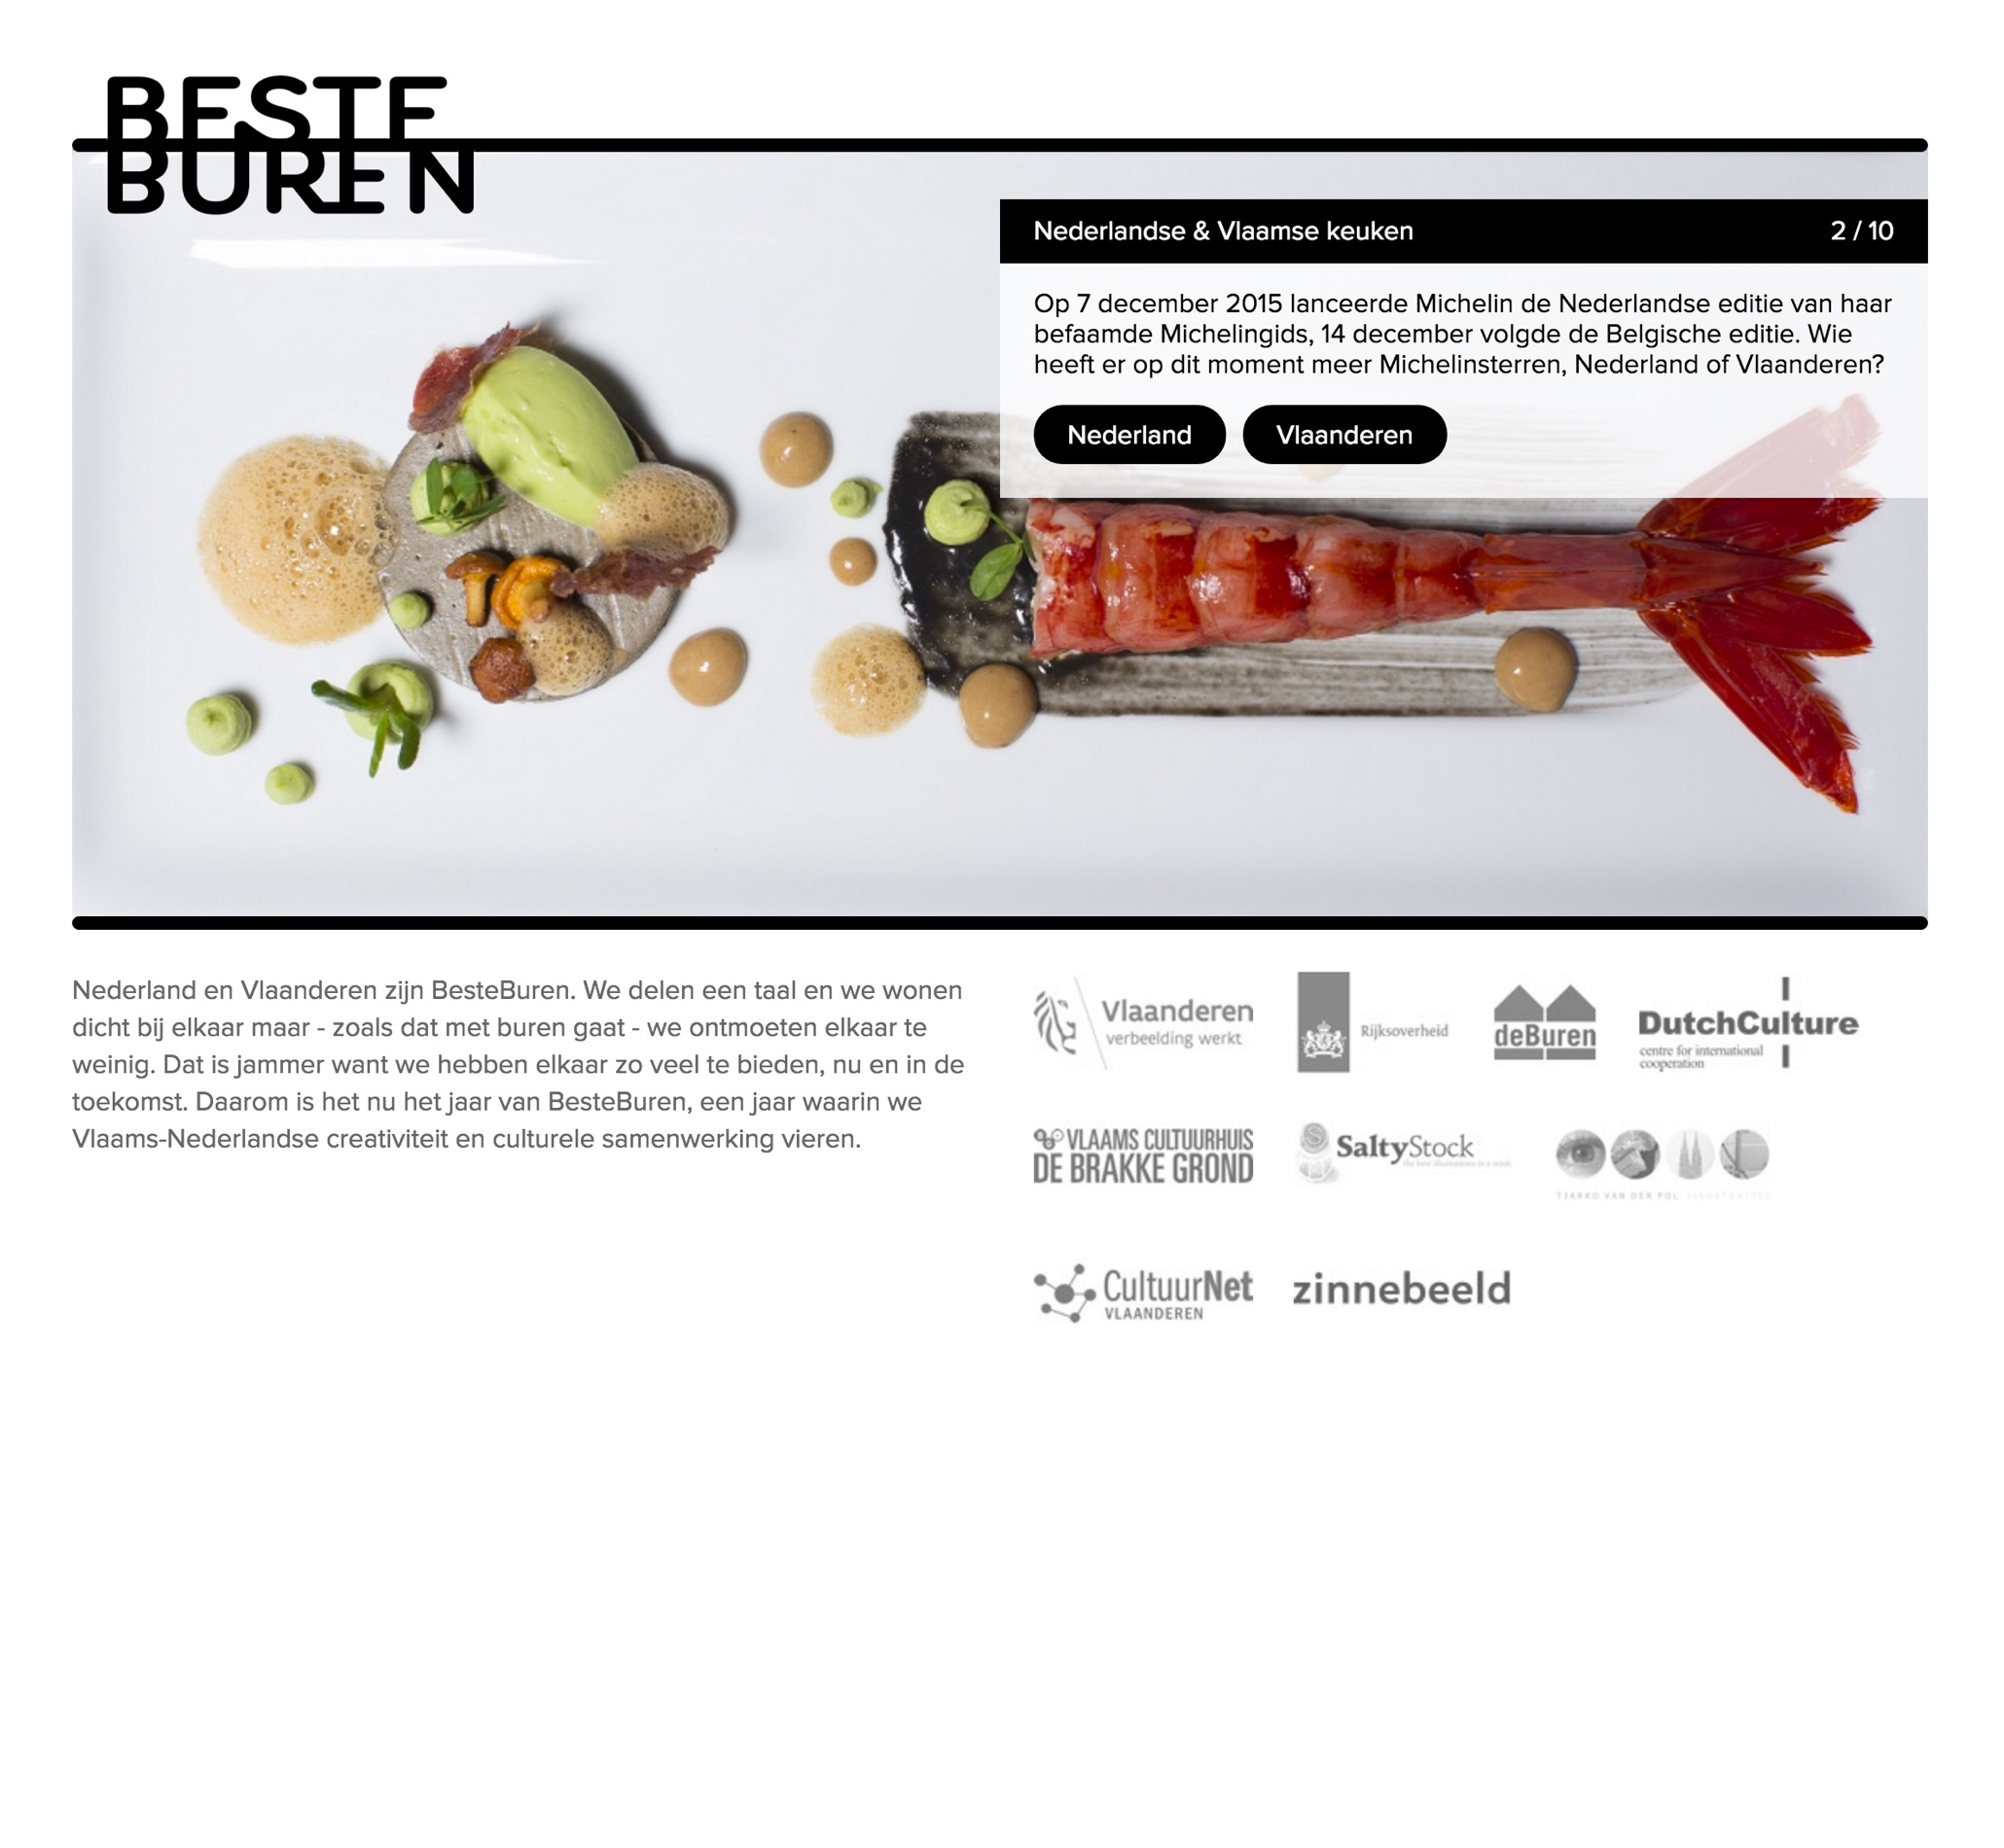 BesteBuren website, quiz page.